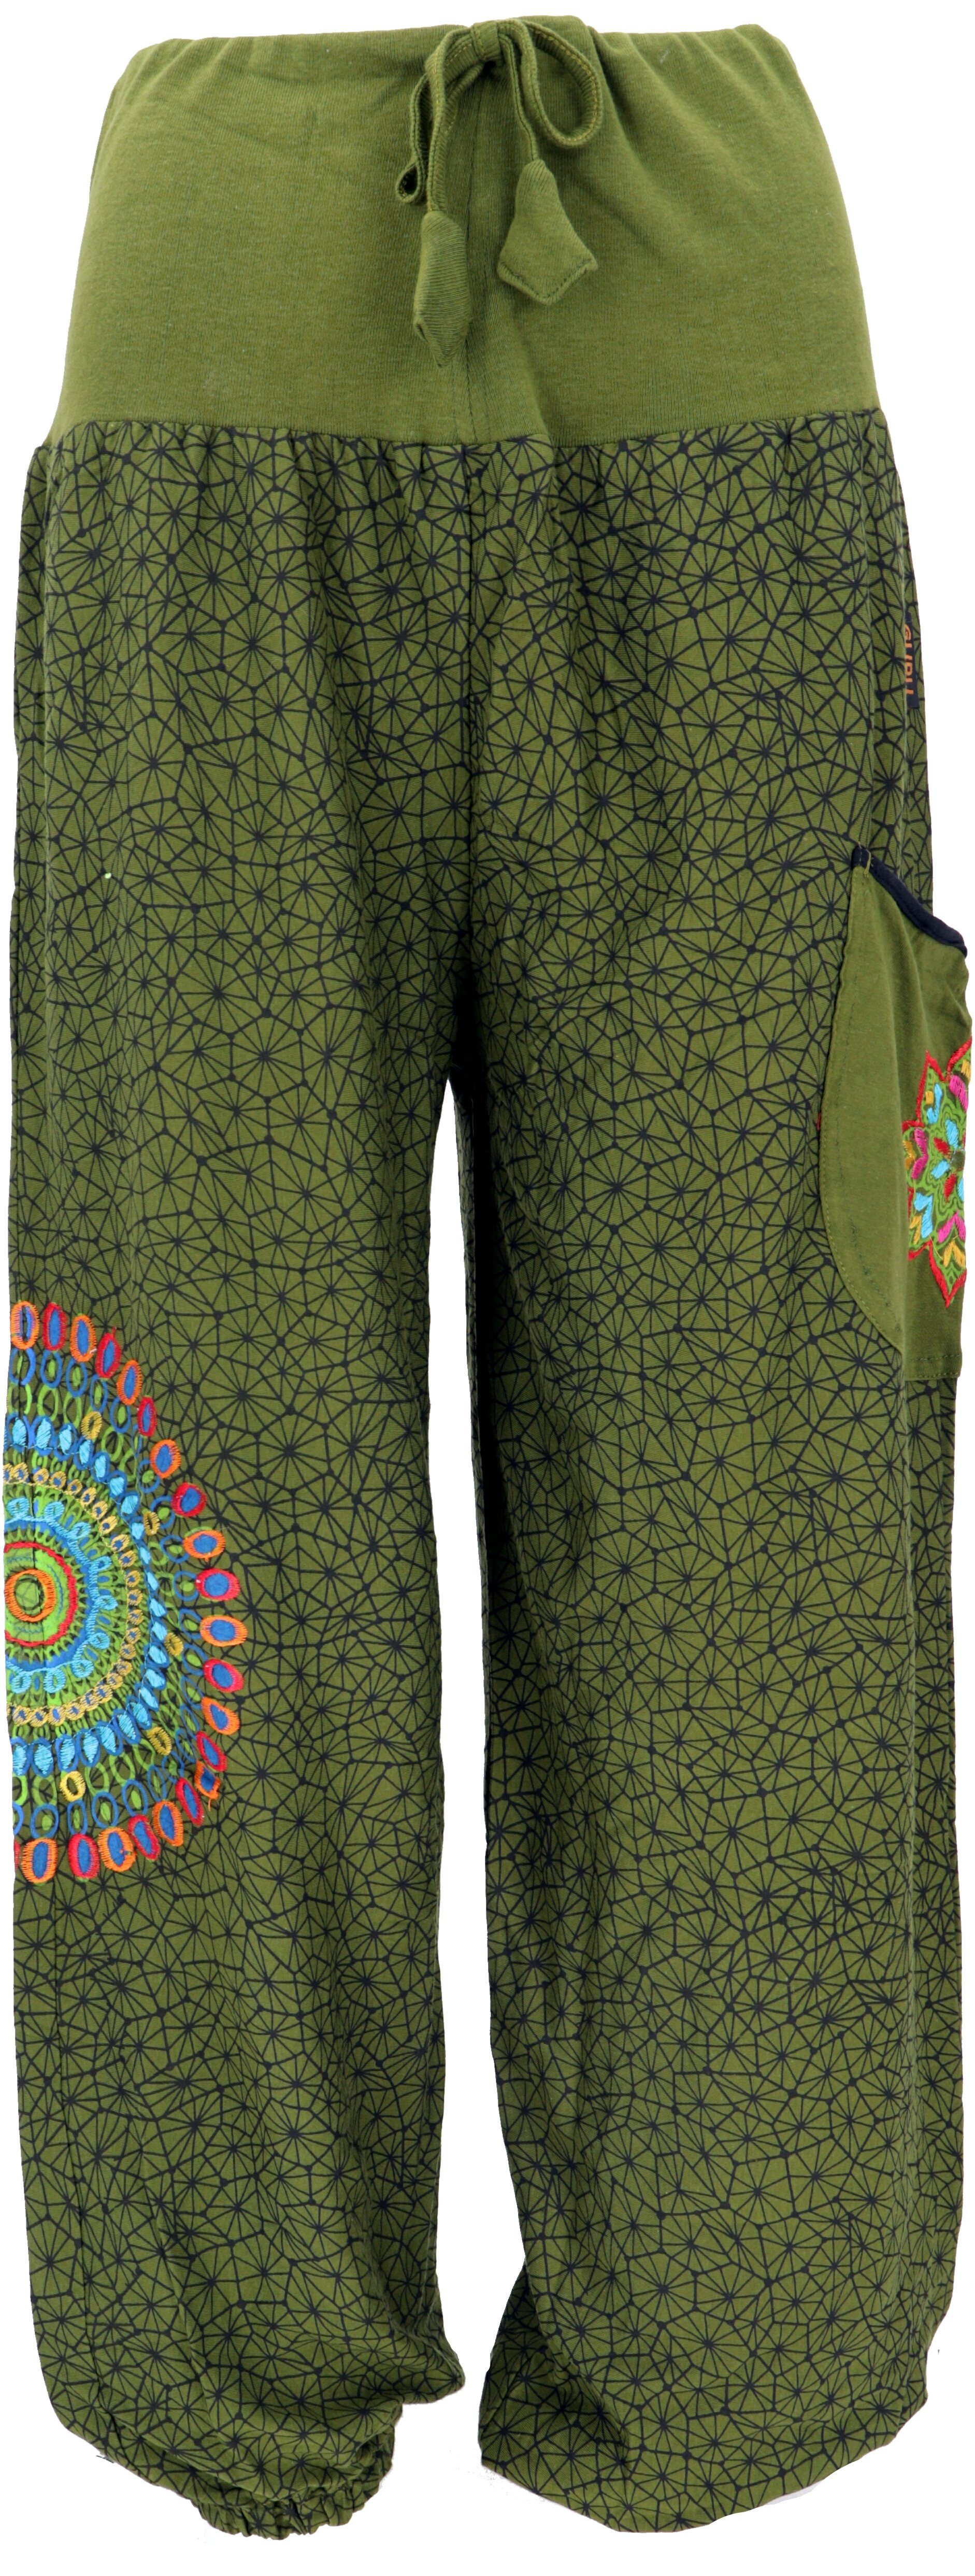 Guru-Shop Relaxhose Weite Pluderhose mit breitem Bund und.. Ethno Style, alternative Bekleidung olivgrün